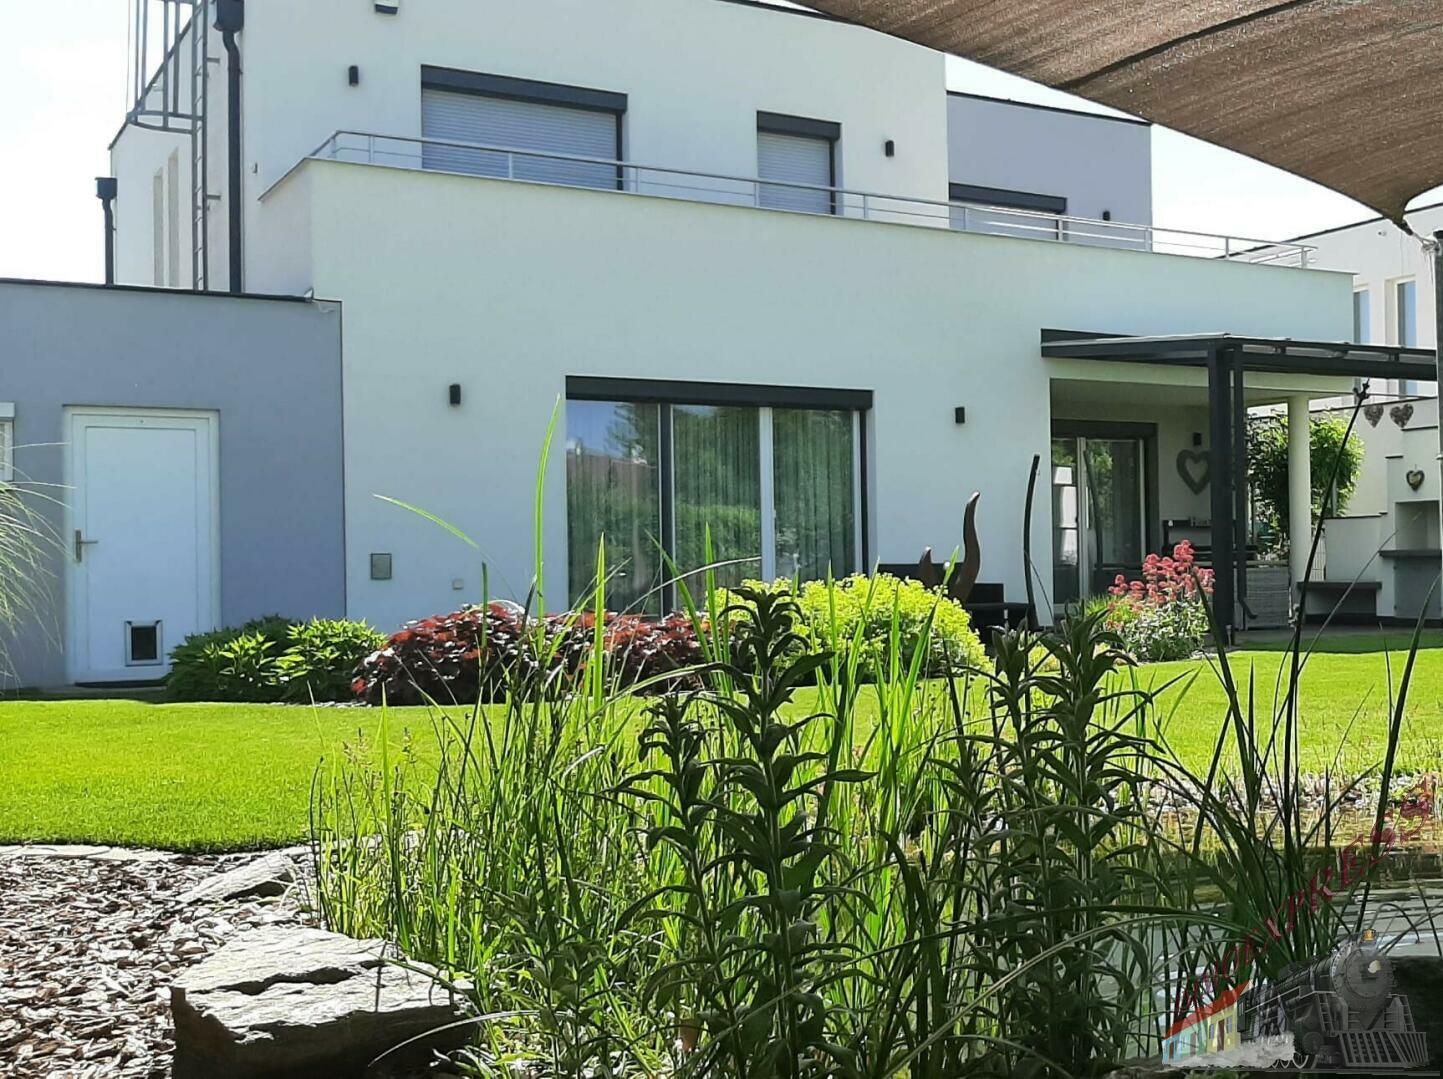 Traumhaus mit wunderschönem Garten in ruhiger Siedlungslage sucht nette Familie!